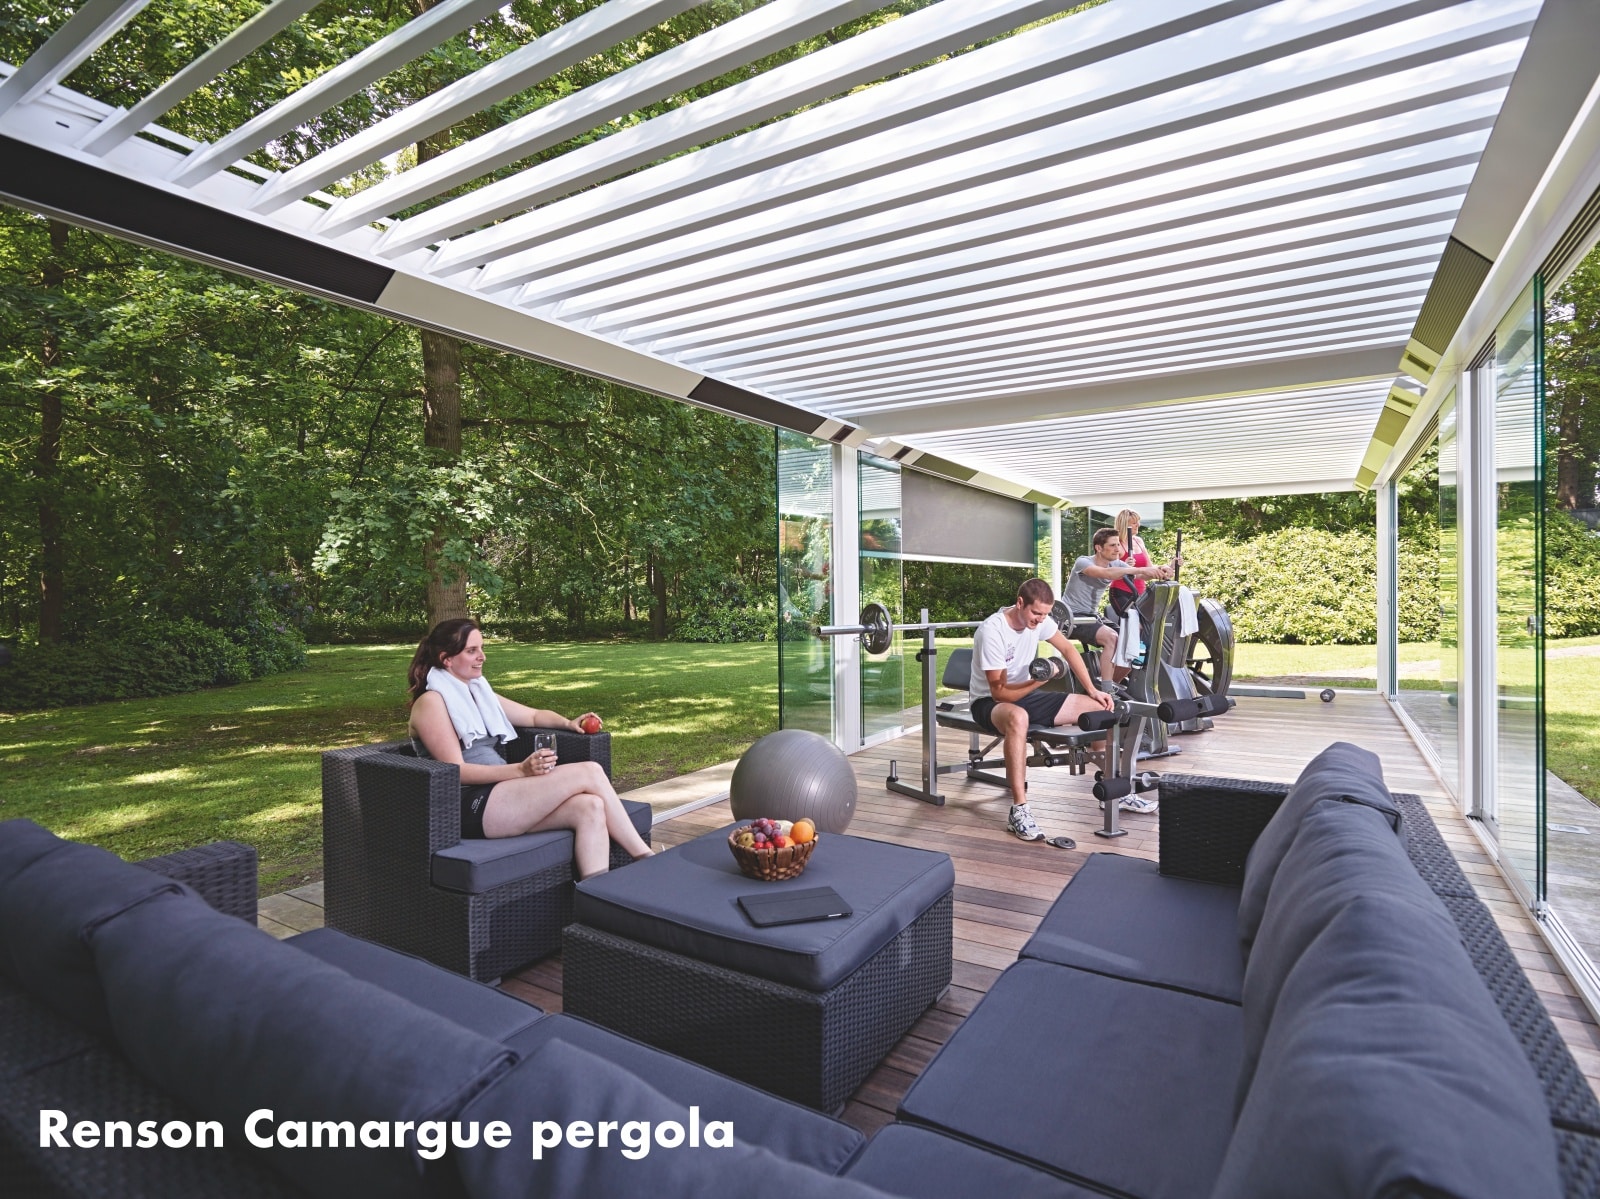 Overdækket terrasse med lukkede sider - Renson Camargue